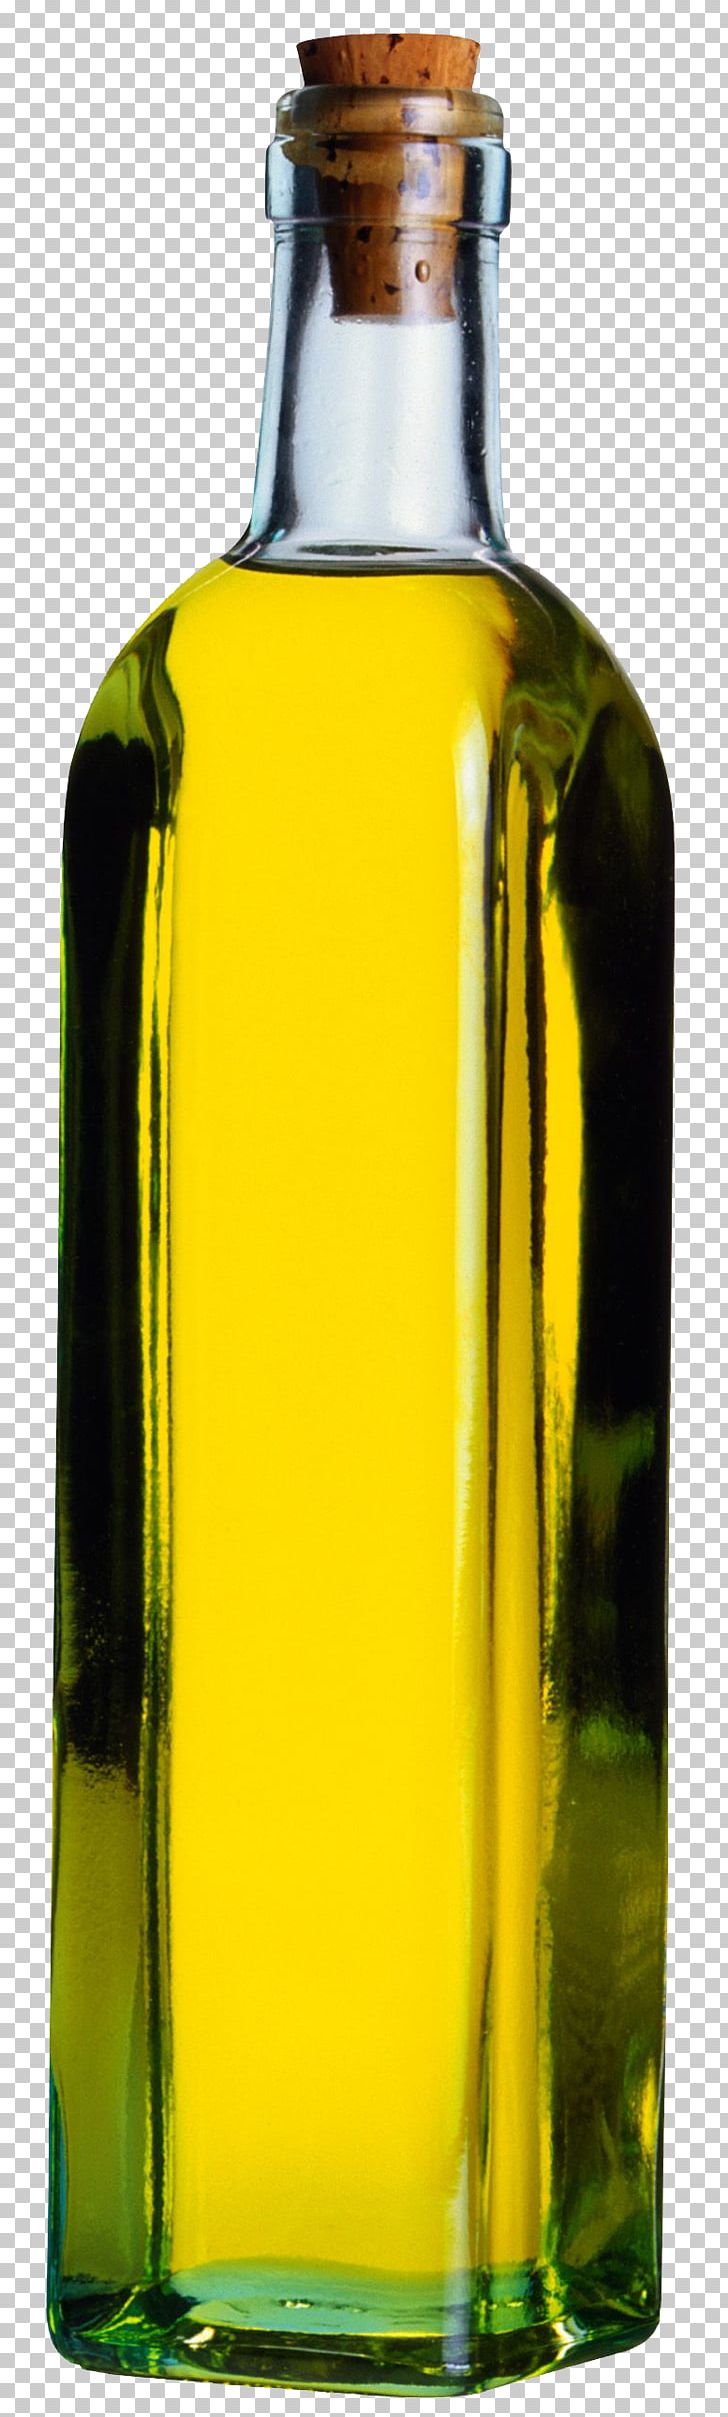 Olive Oil Cooking Oils Castor Oil PNG, Clipart, Barware, Bottle, Canola, Castor Oil, Cooking Free PNG Download